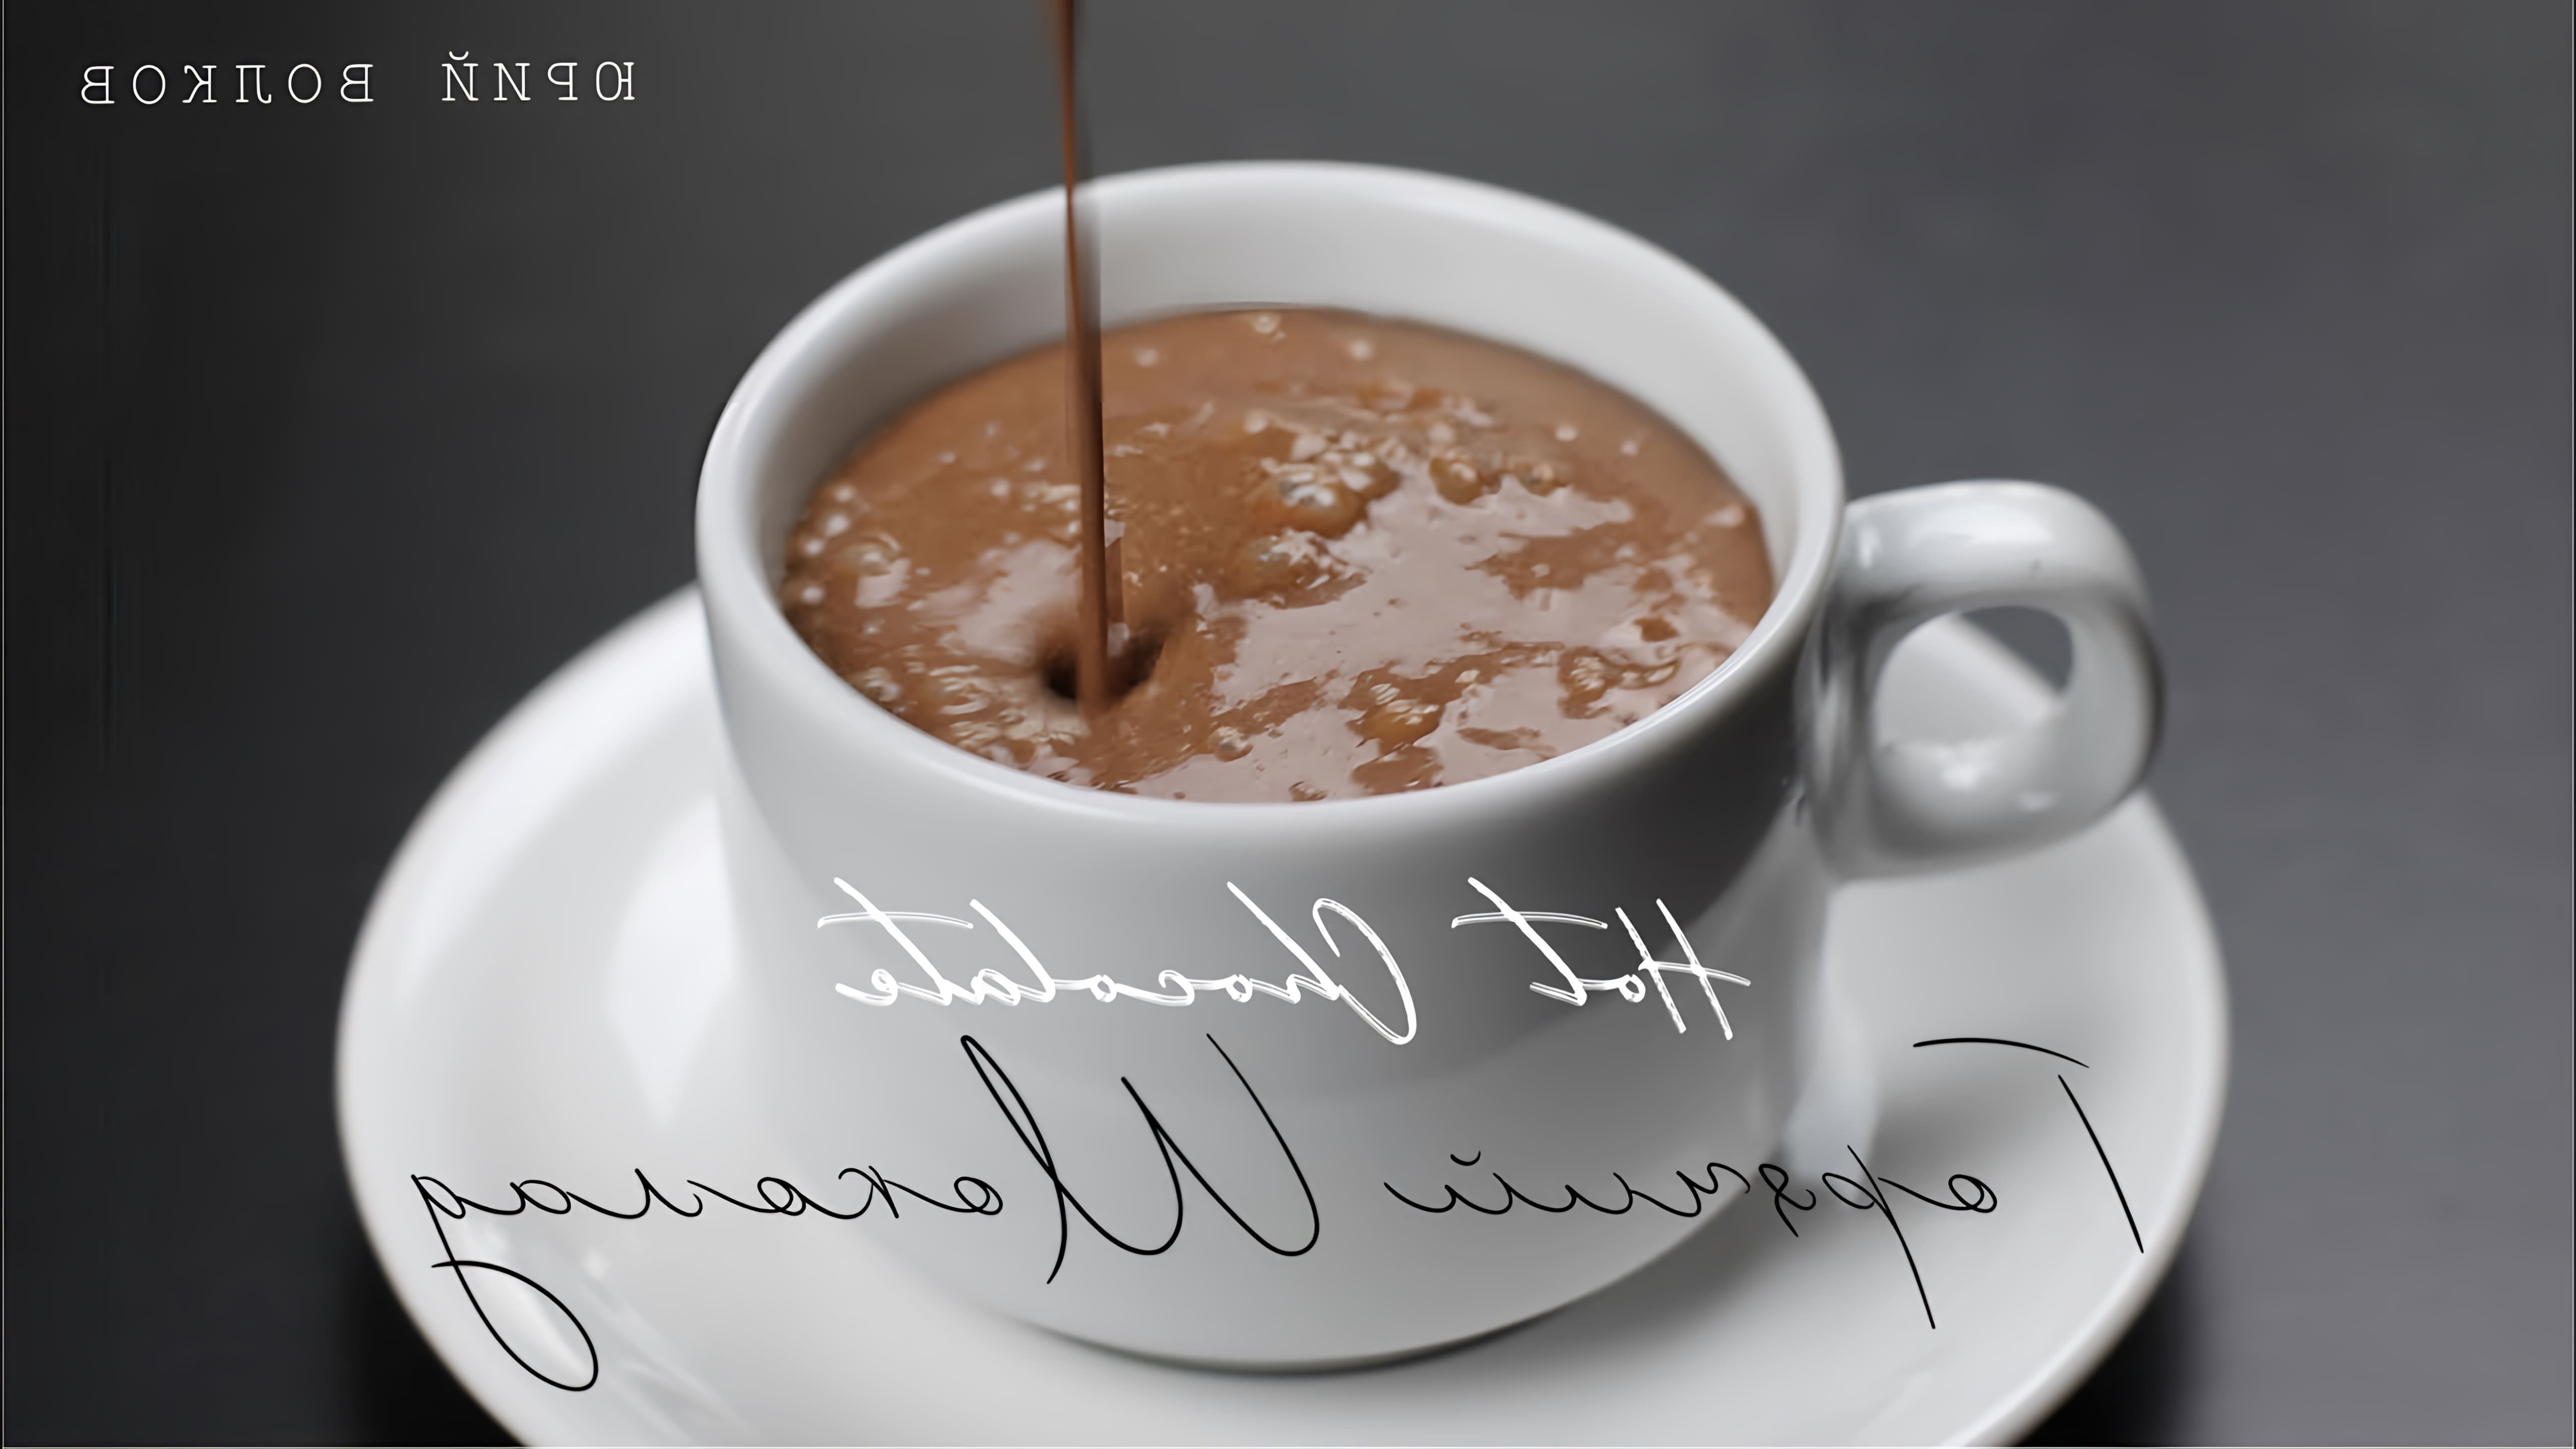 Горячий шоколад ☆ Лучший рецепт шеф-кондитера ☆ Hot chocolate ☆ Готовим горячий шоколад (ENG Subs)